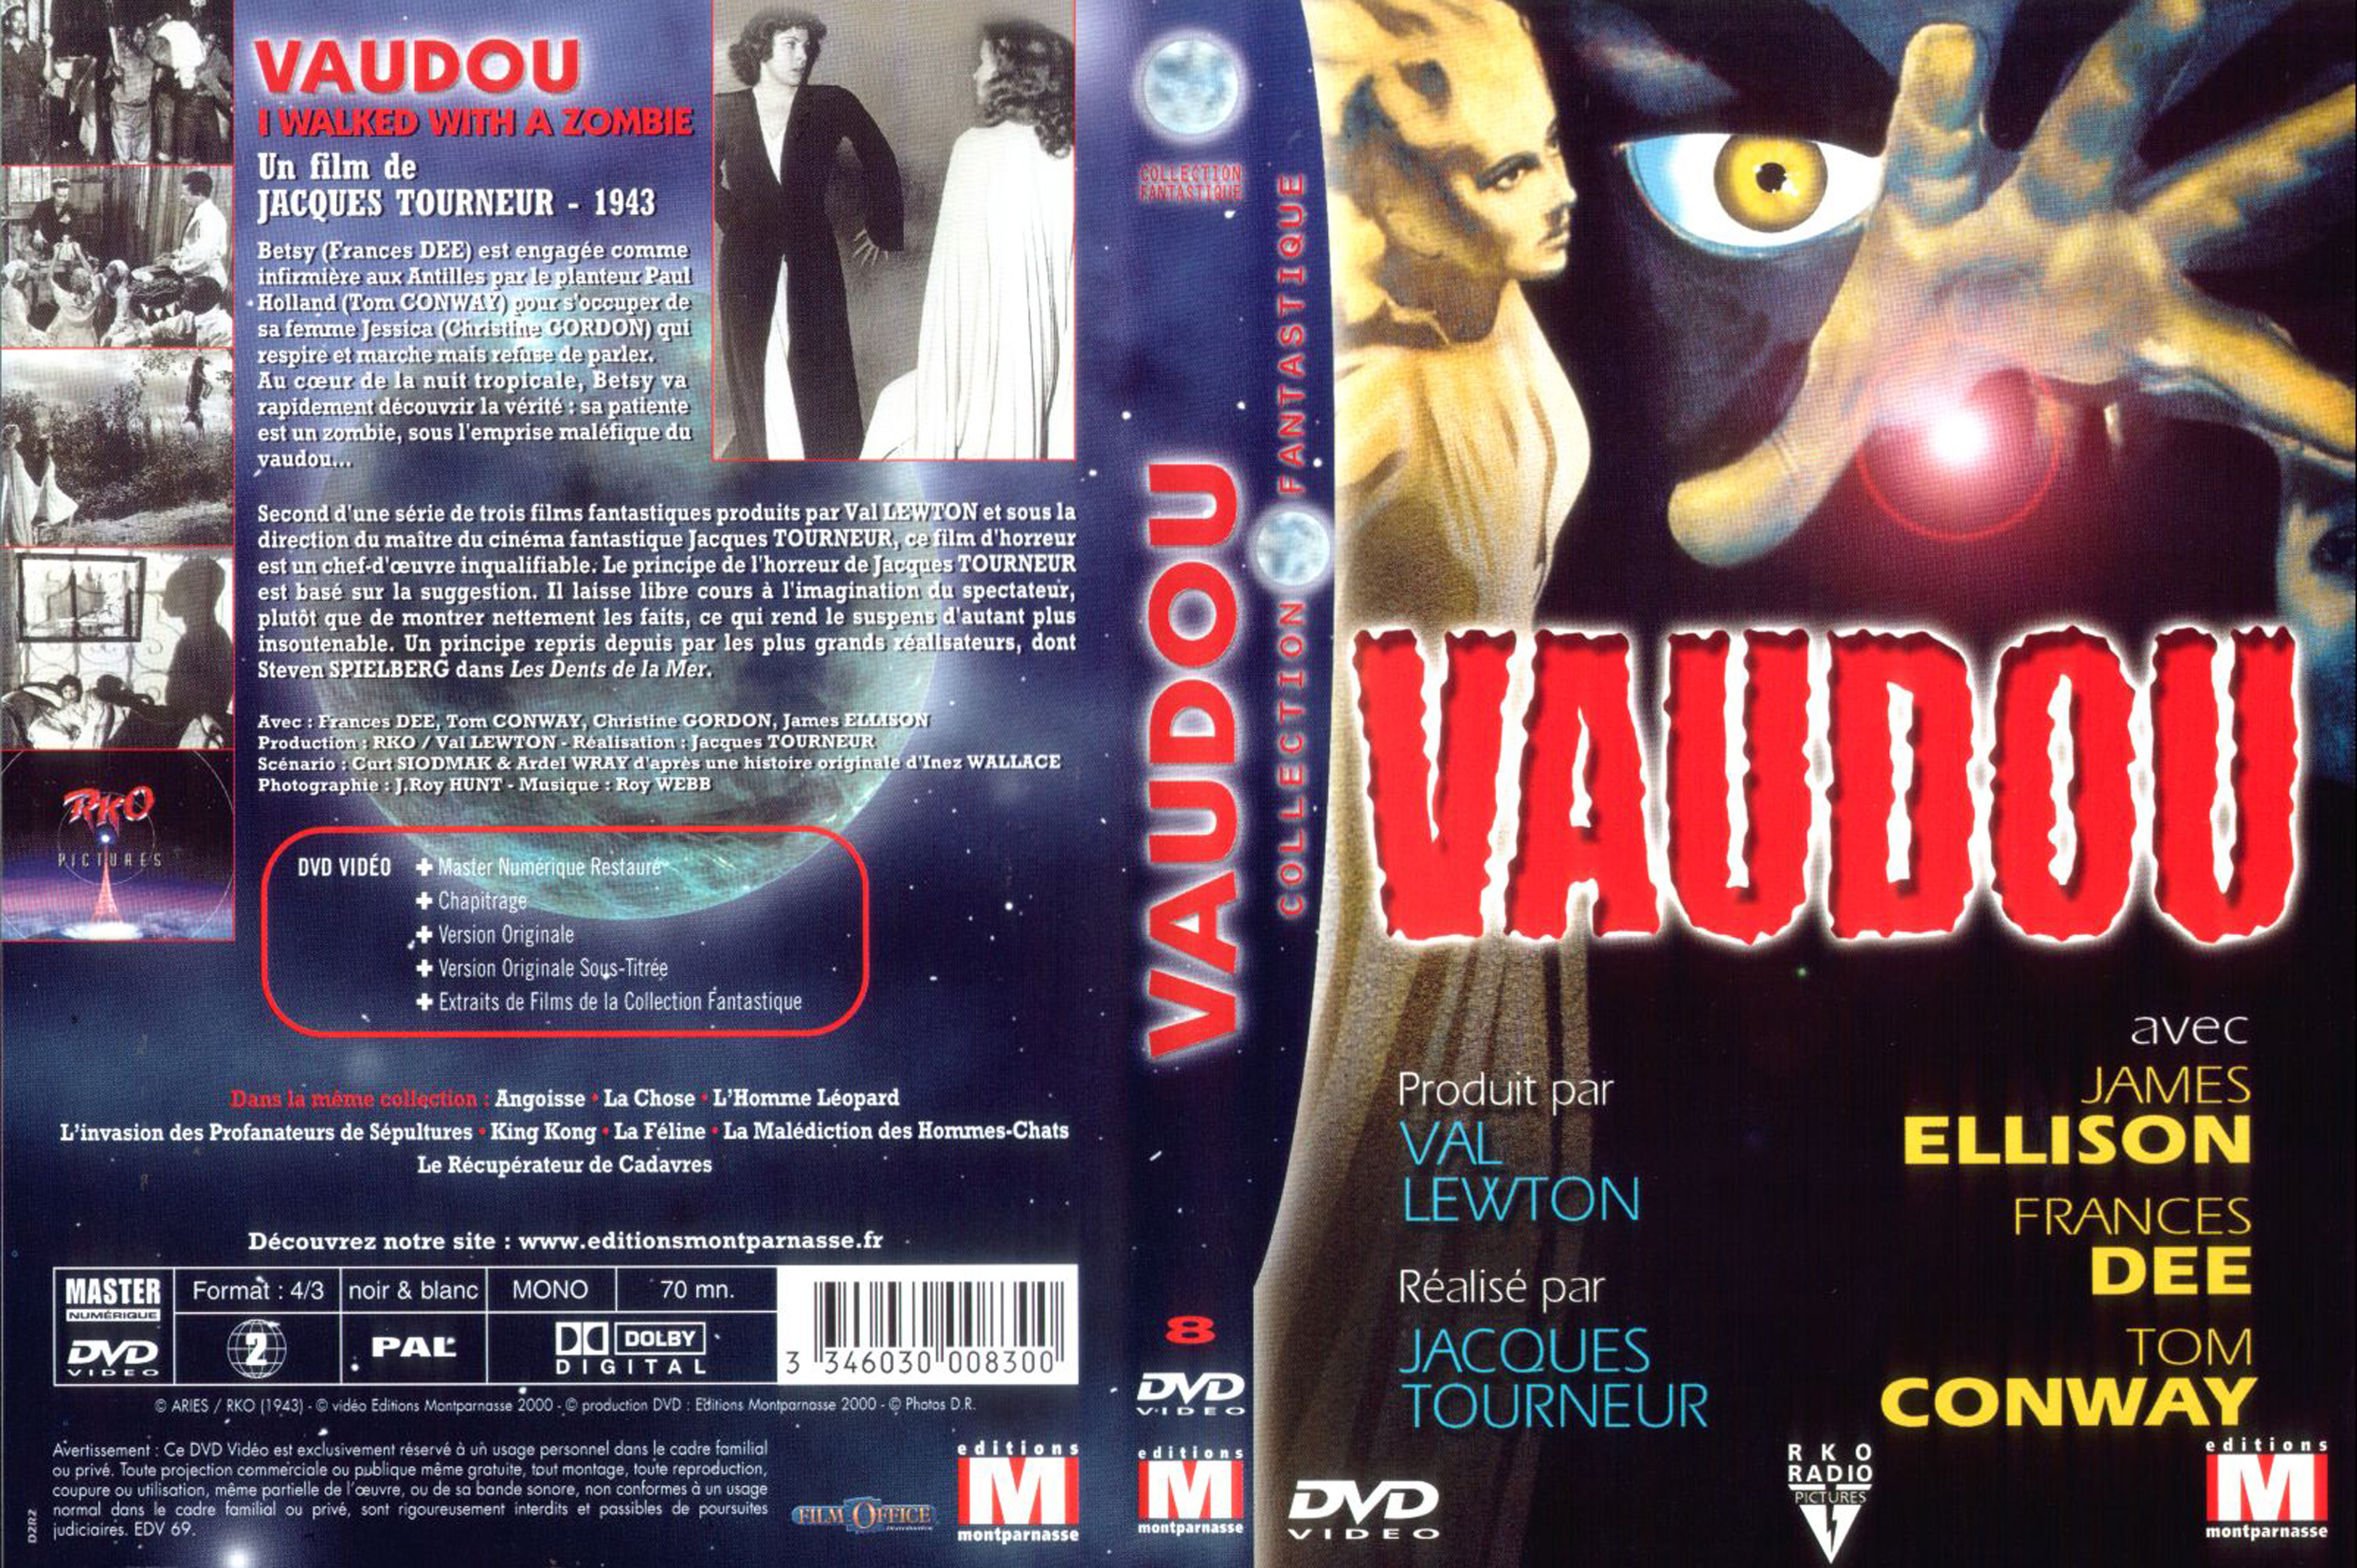 Jaquette DVD Vaudou